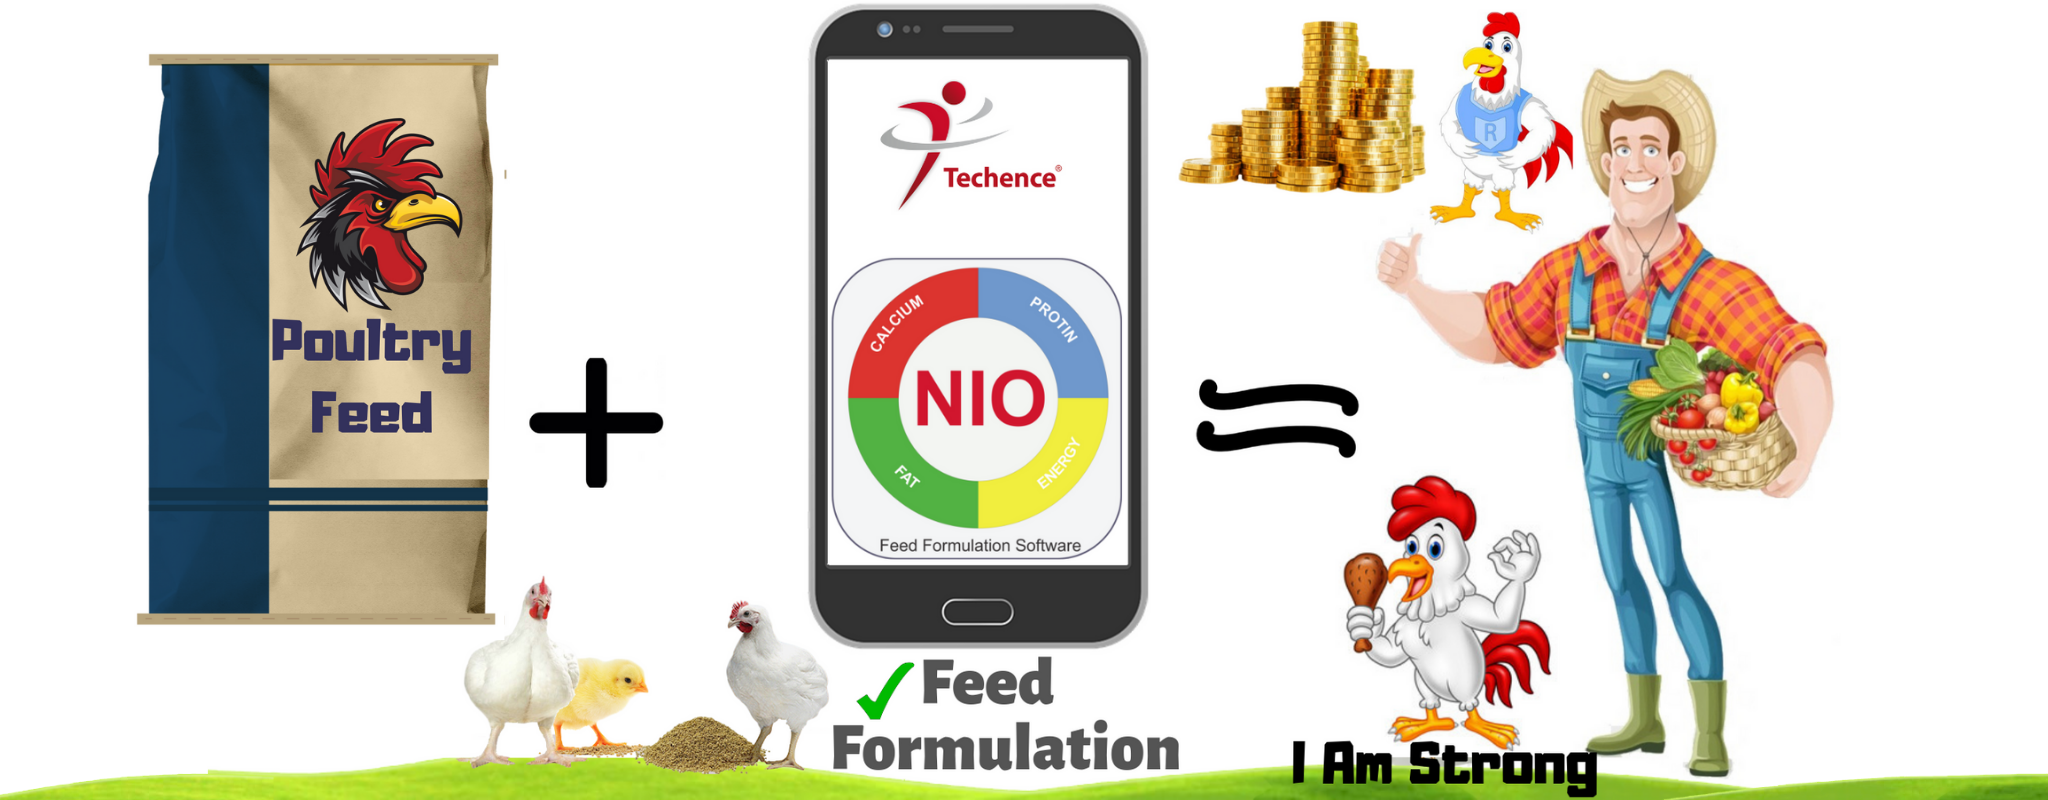 Nio Feed Formulation1